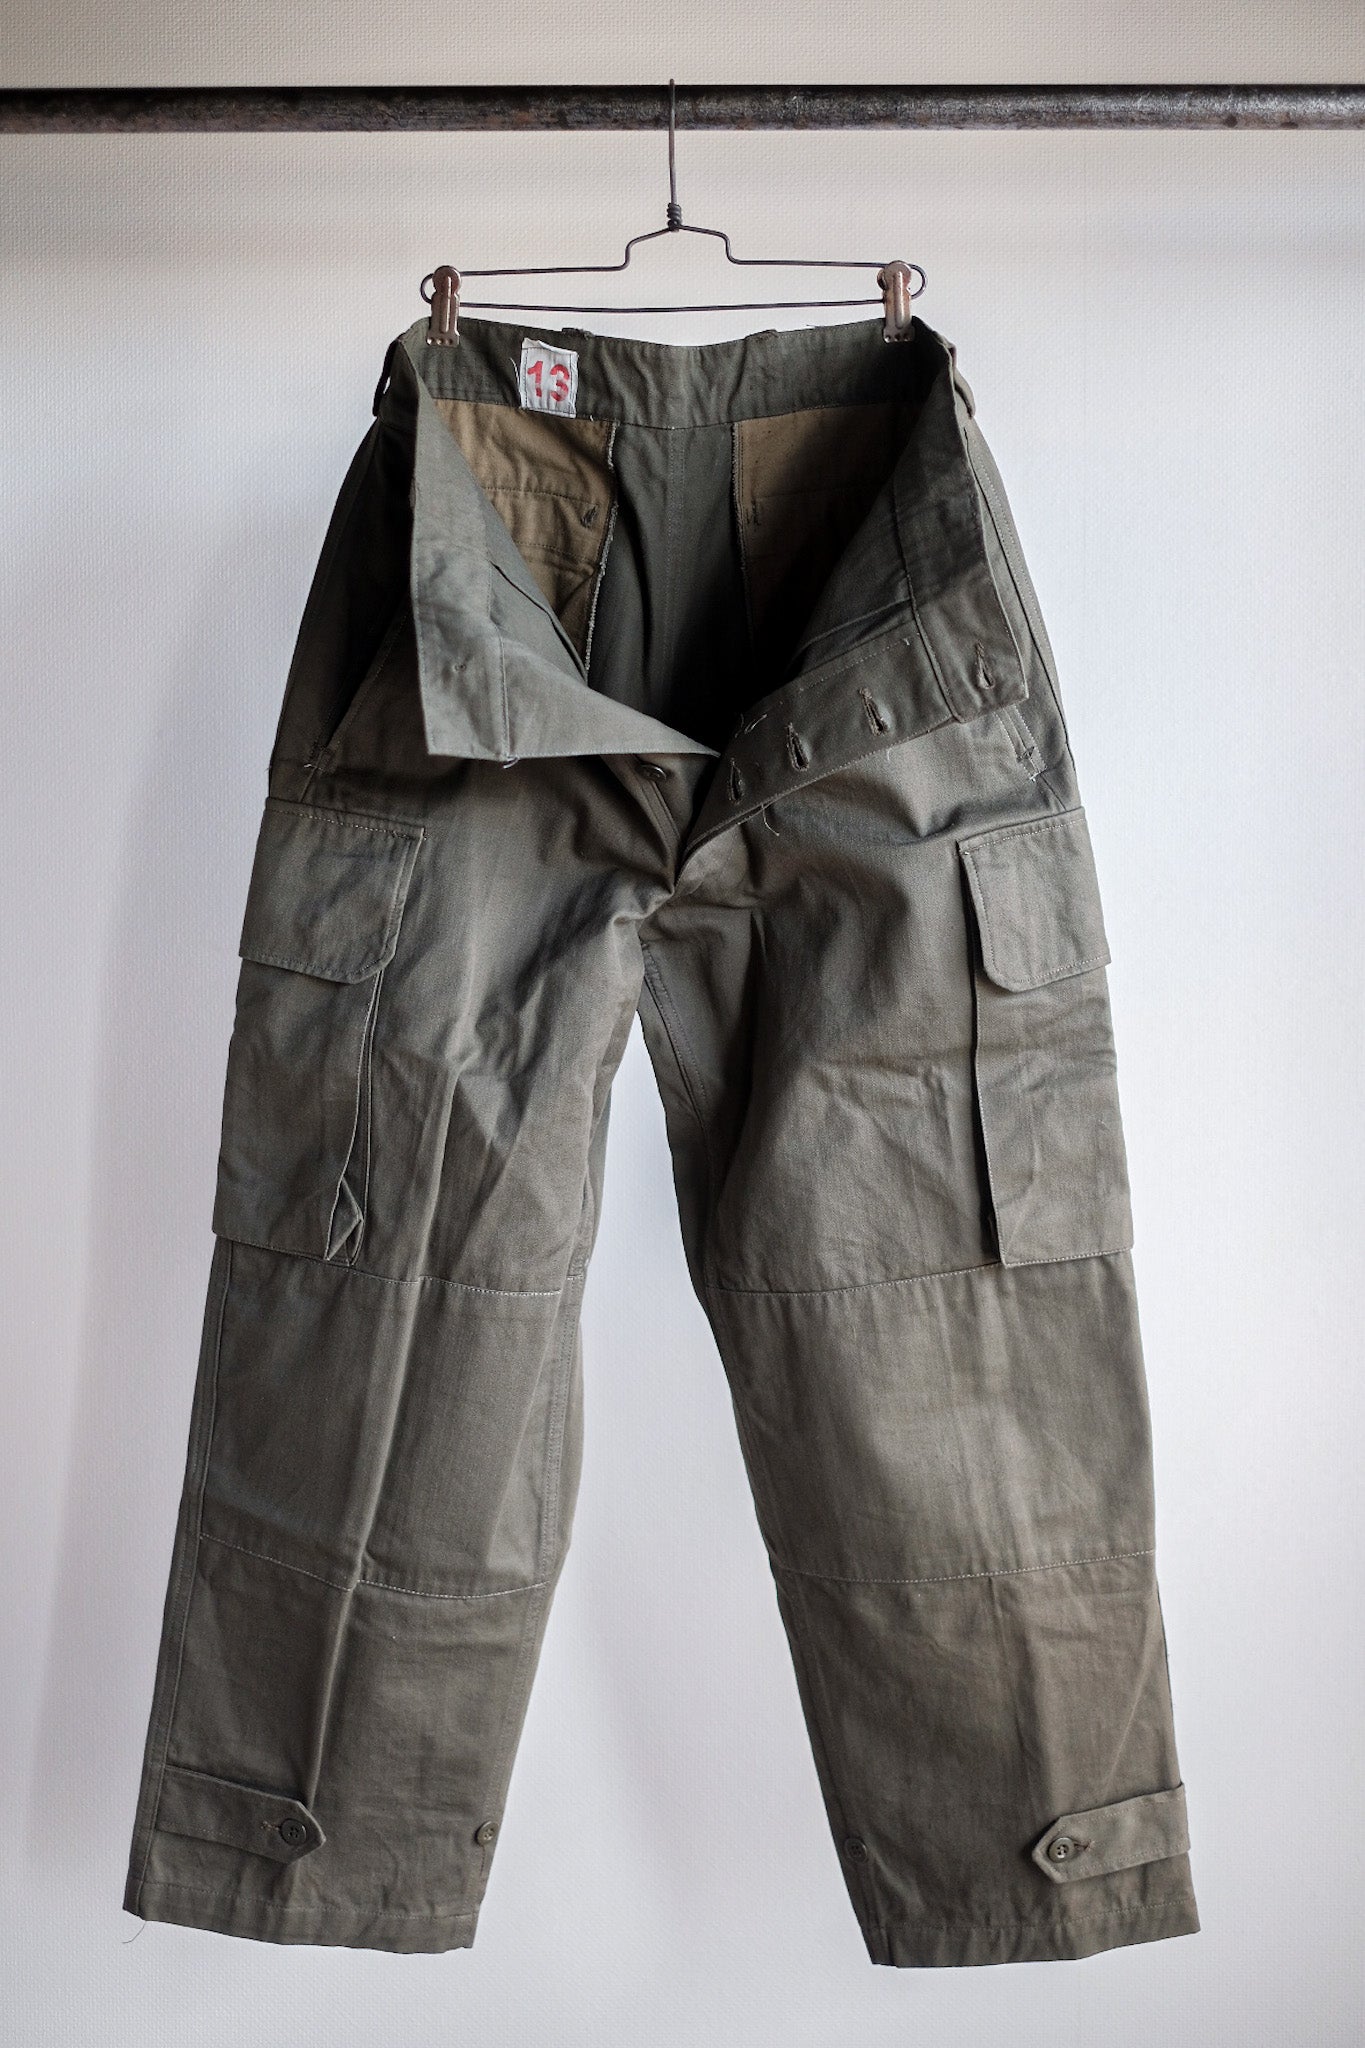 [~ 60's] Taille des pantalons de terrain de l'armée française M47.13 "Stock mort"